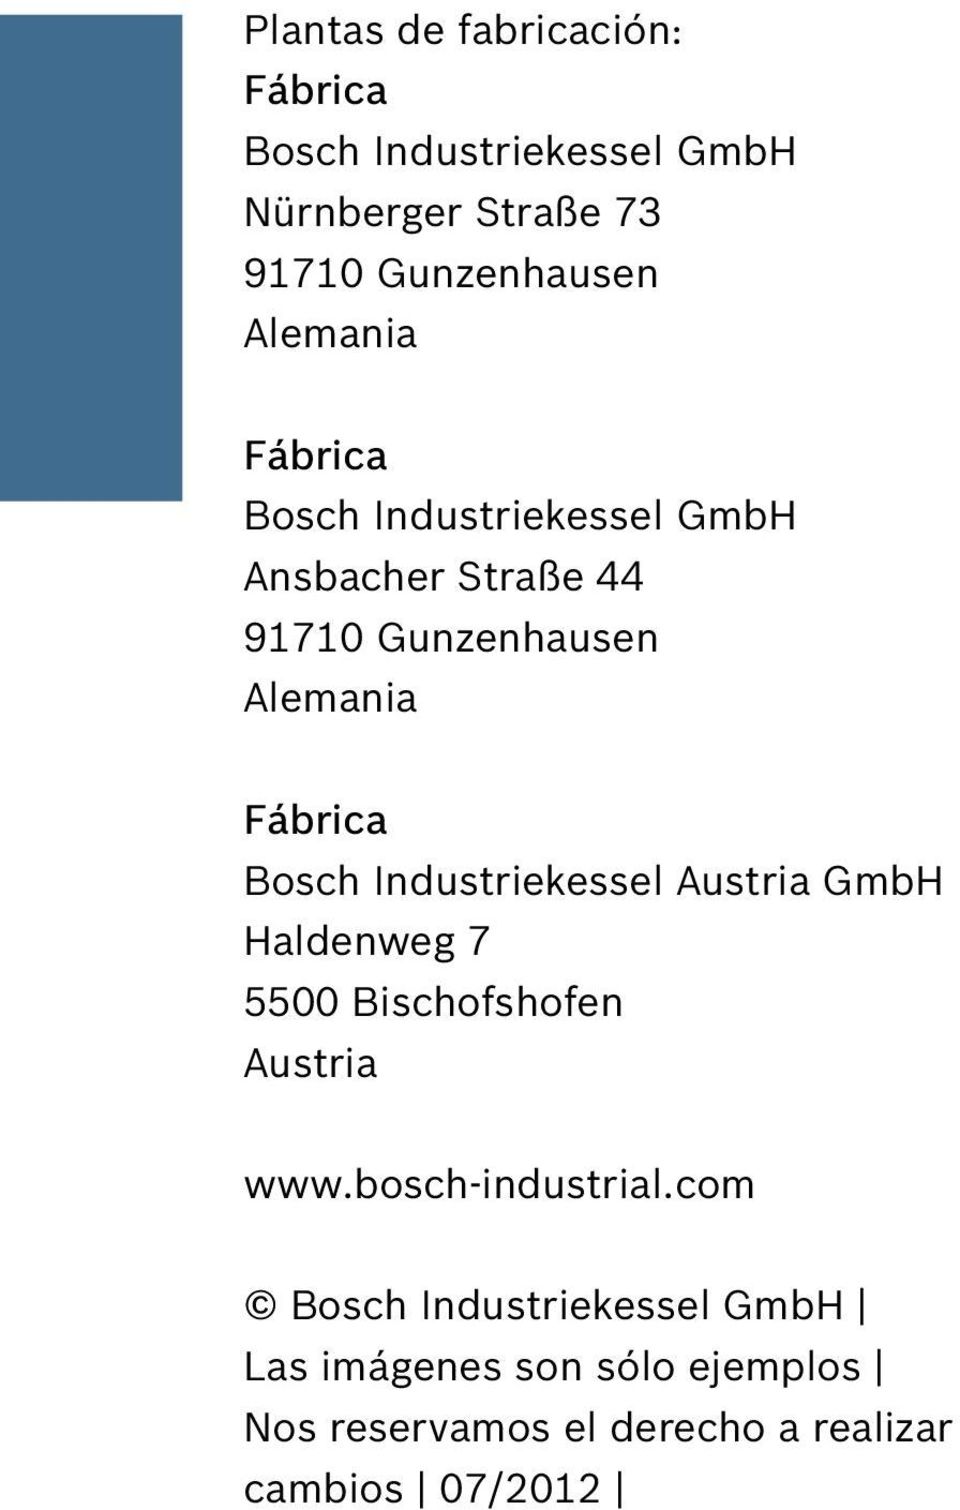 Bosch Industriekessel Austria GmbH Haldenweg 7 5500 Bischofshofen Austria www.bosch-industrial.